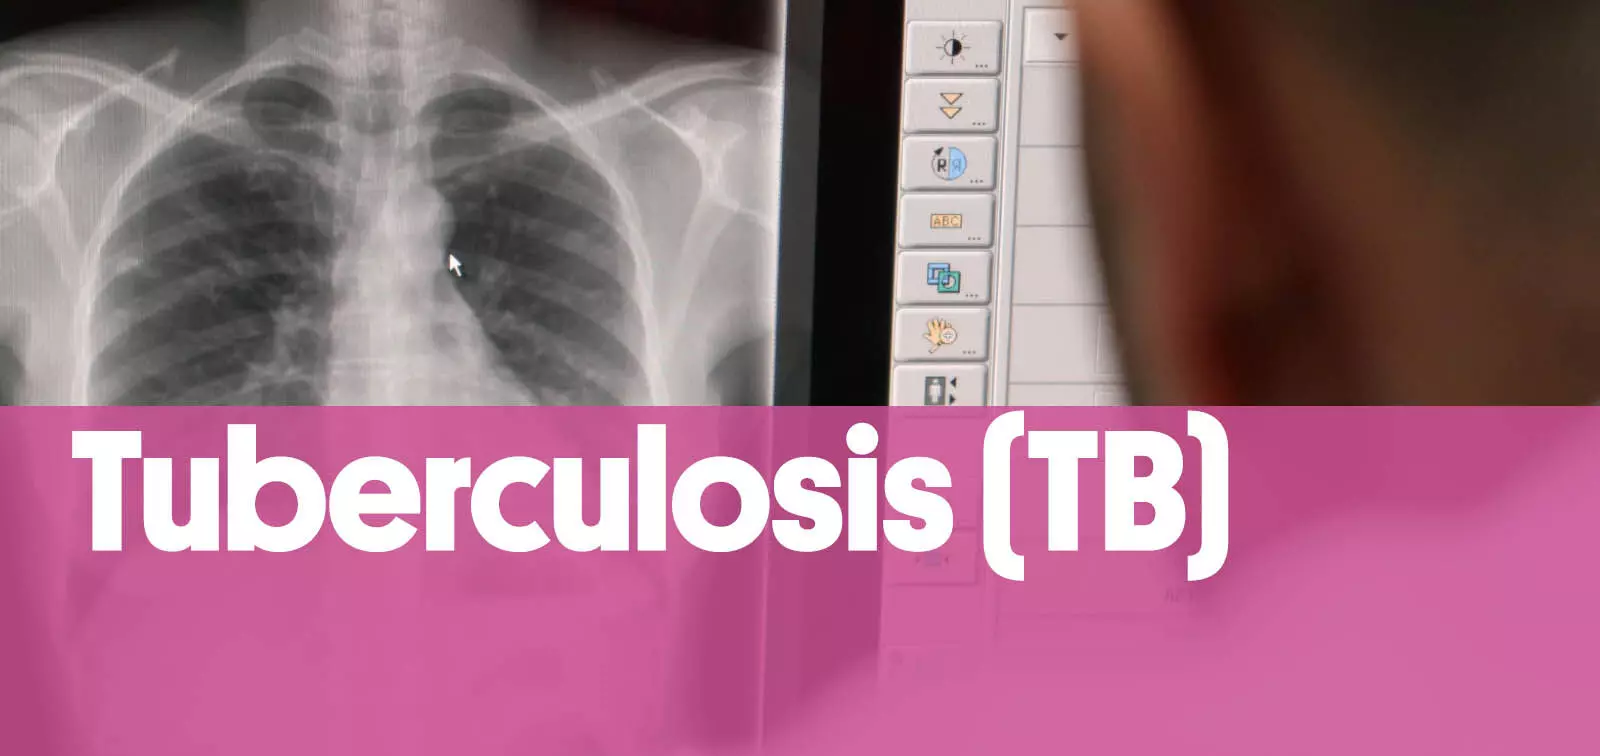 European health agencies: Tuberculosis remains a health concern